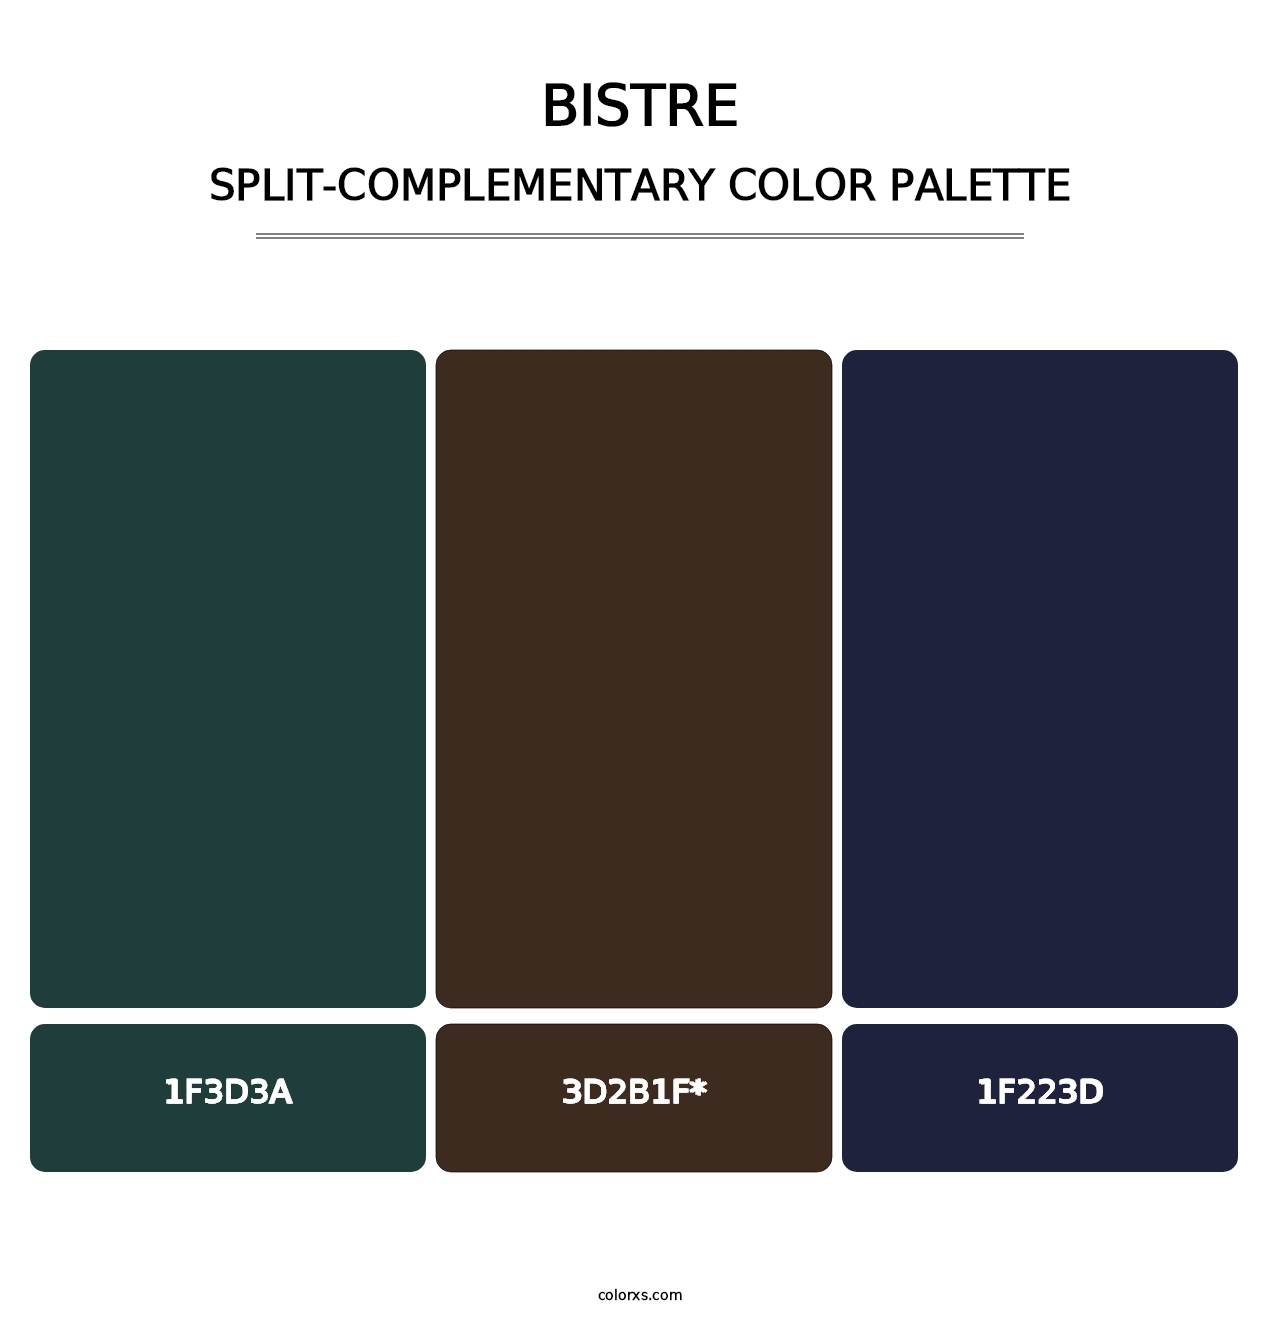 Bistre - Split-Complementary Color Palette